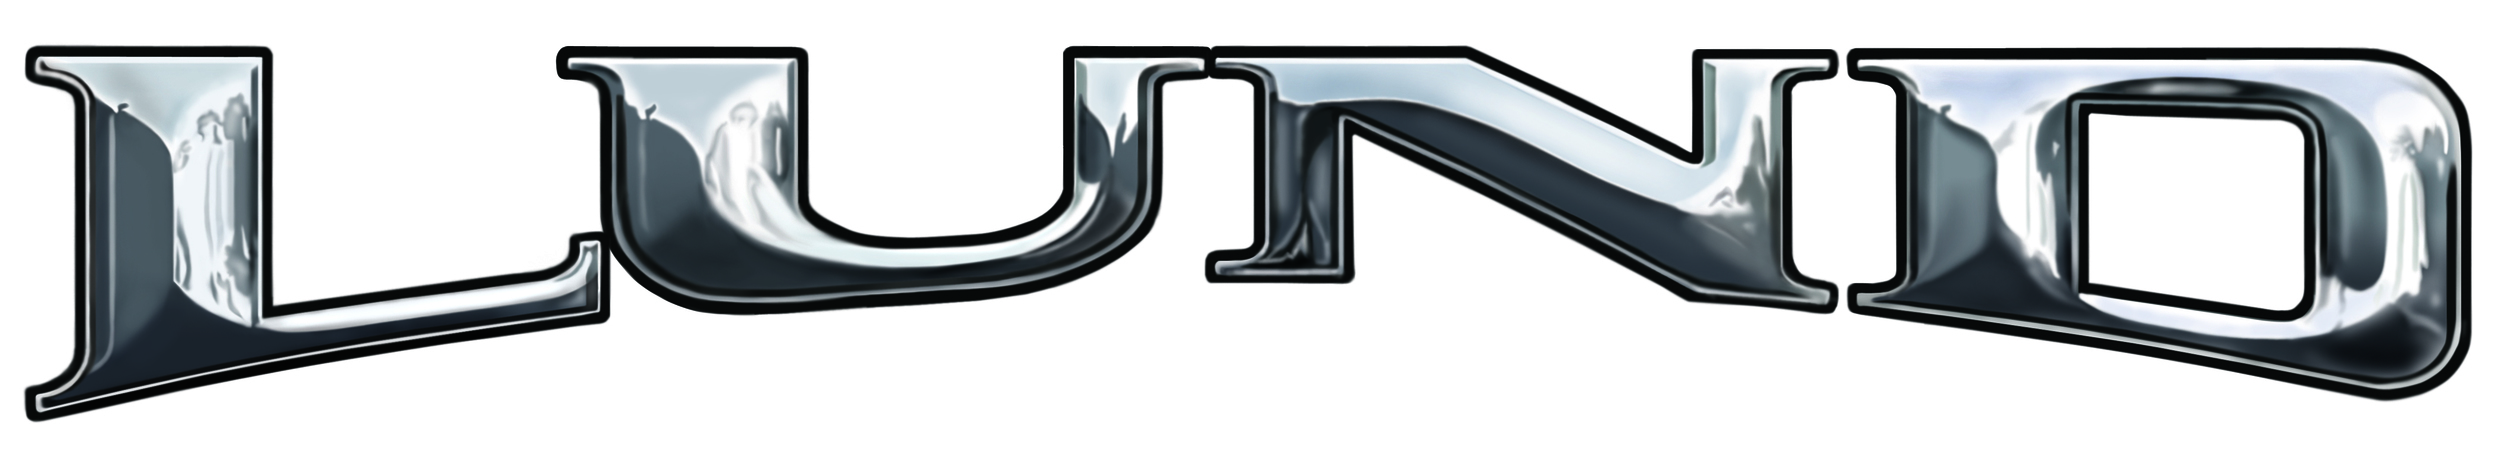 Logo - Lund.jpg